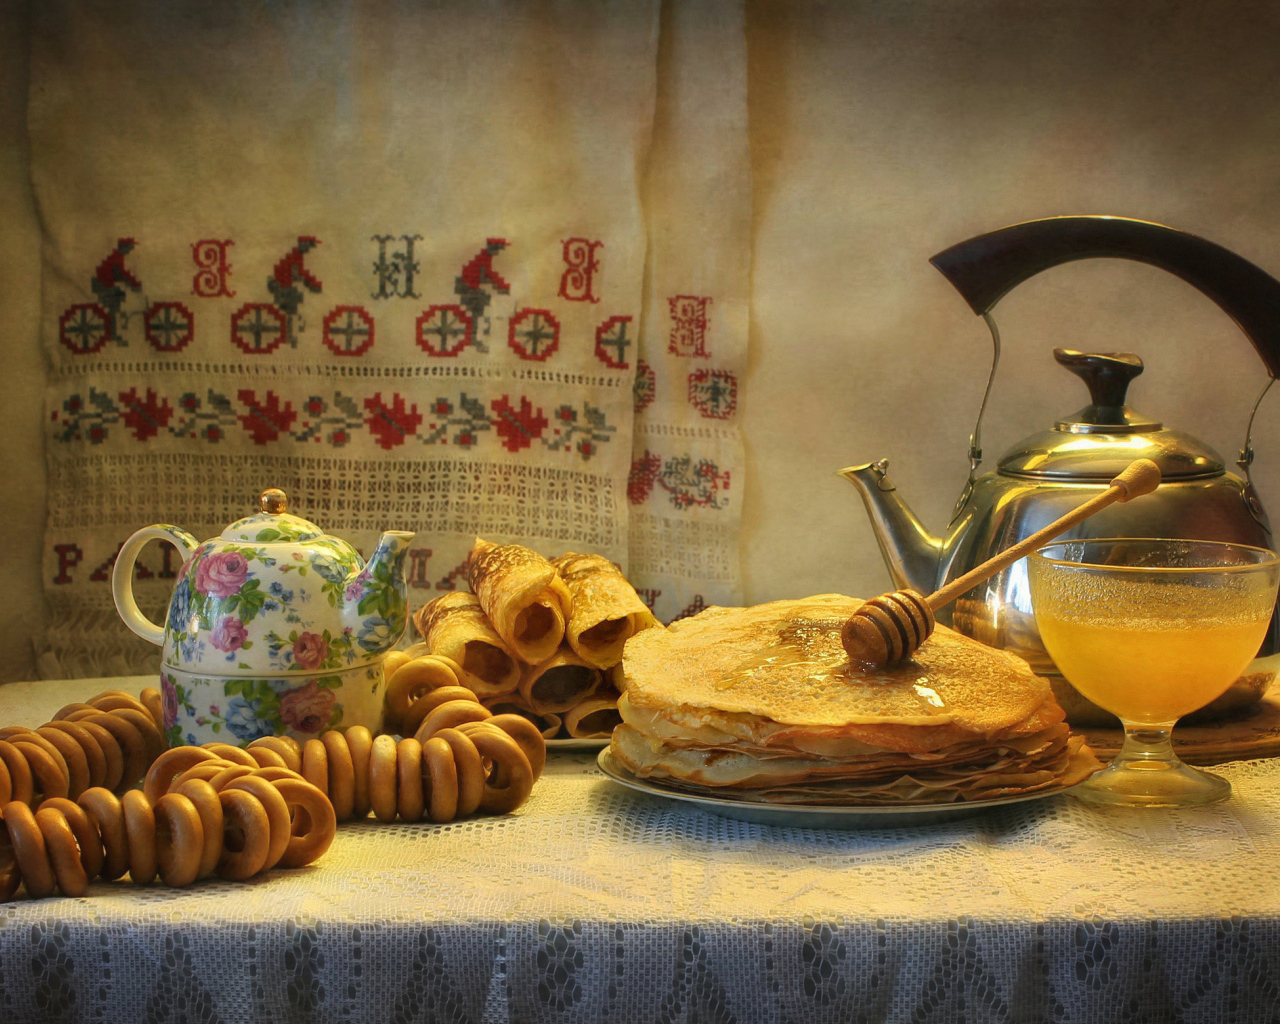 Праздничный стол с блинами и баранками на праздник Масленица